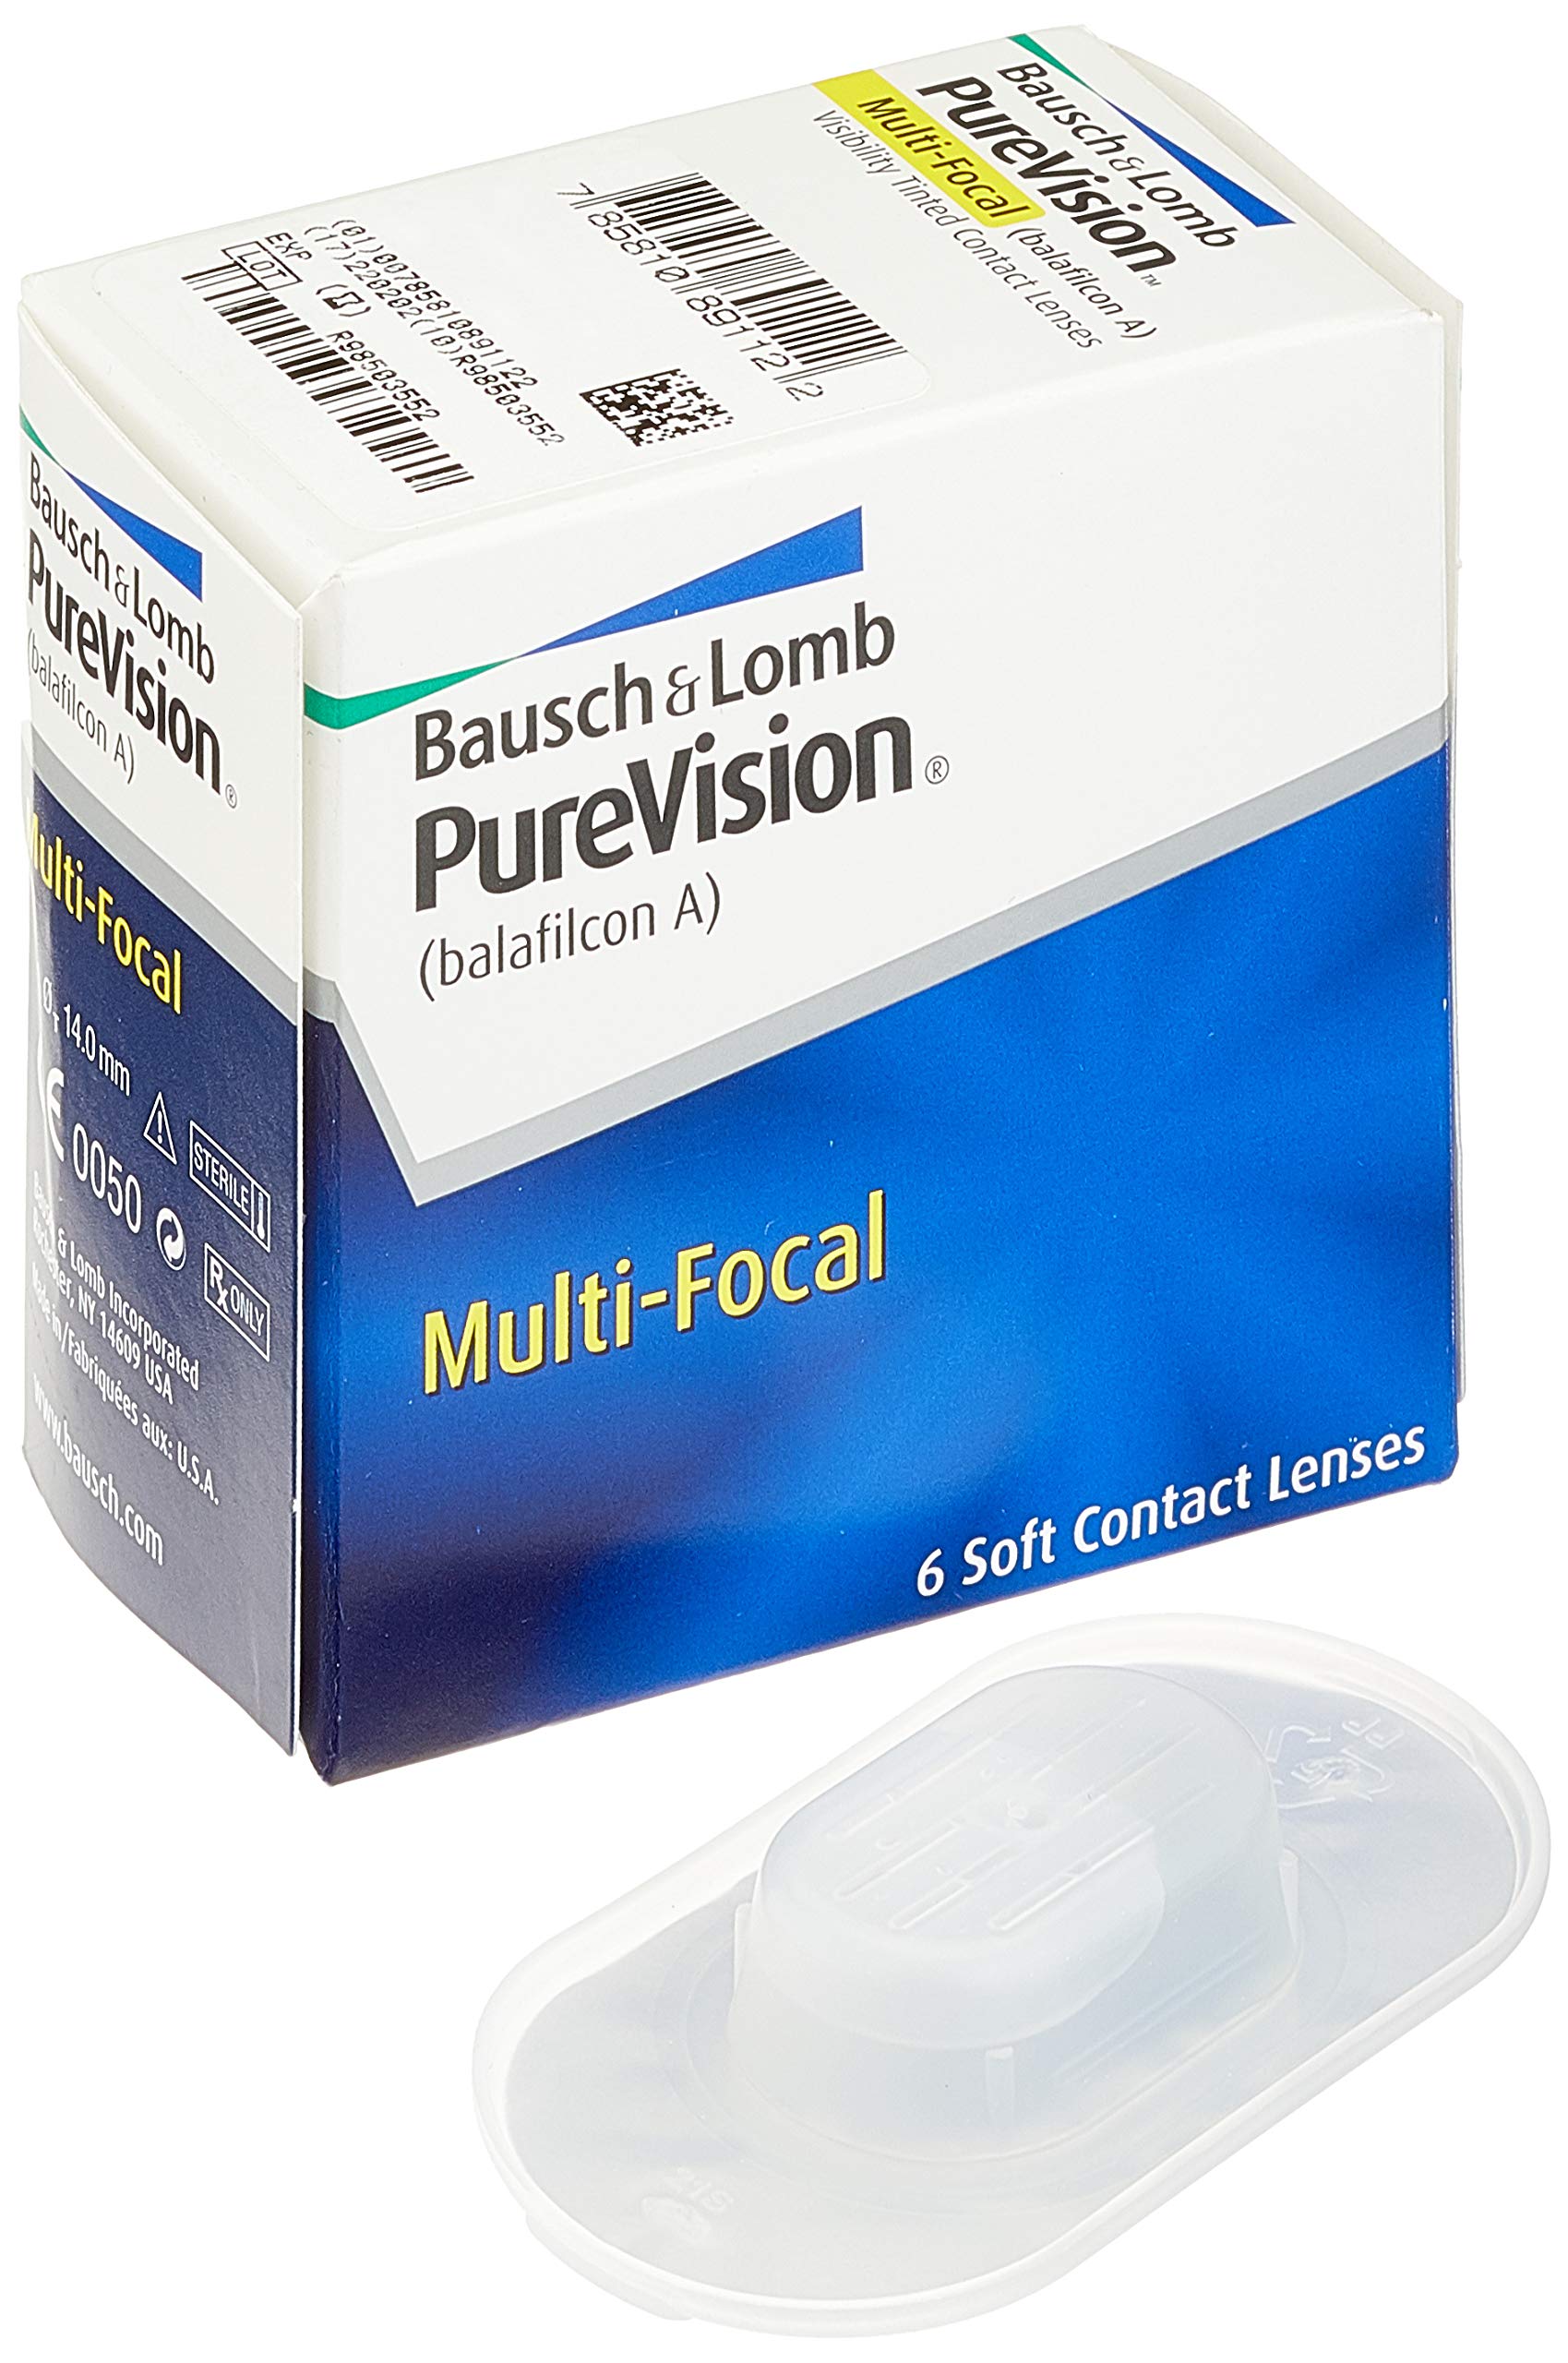 Bausch + Lomb Purevision Multifocal Monatslinsen, Gleitsicht-Kontaktlinsen, weich, 6 Stück BC 8.6 mm / DIA 14 / 1.5 Dioptrien / ADD Low